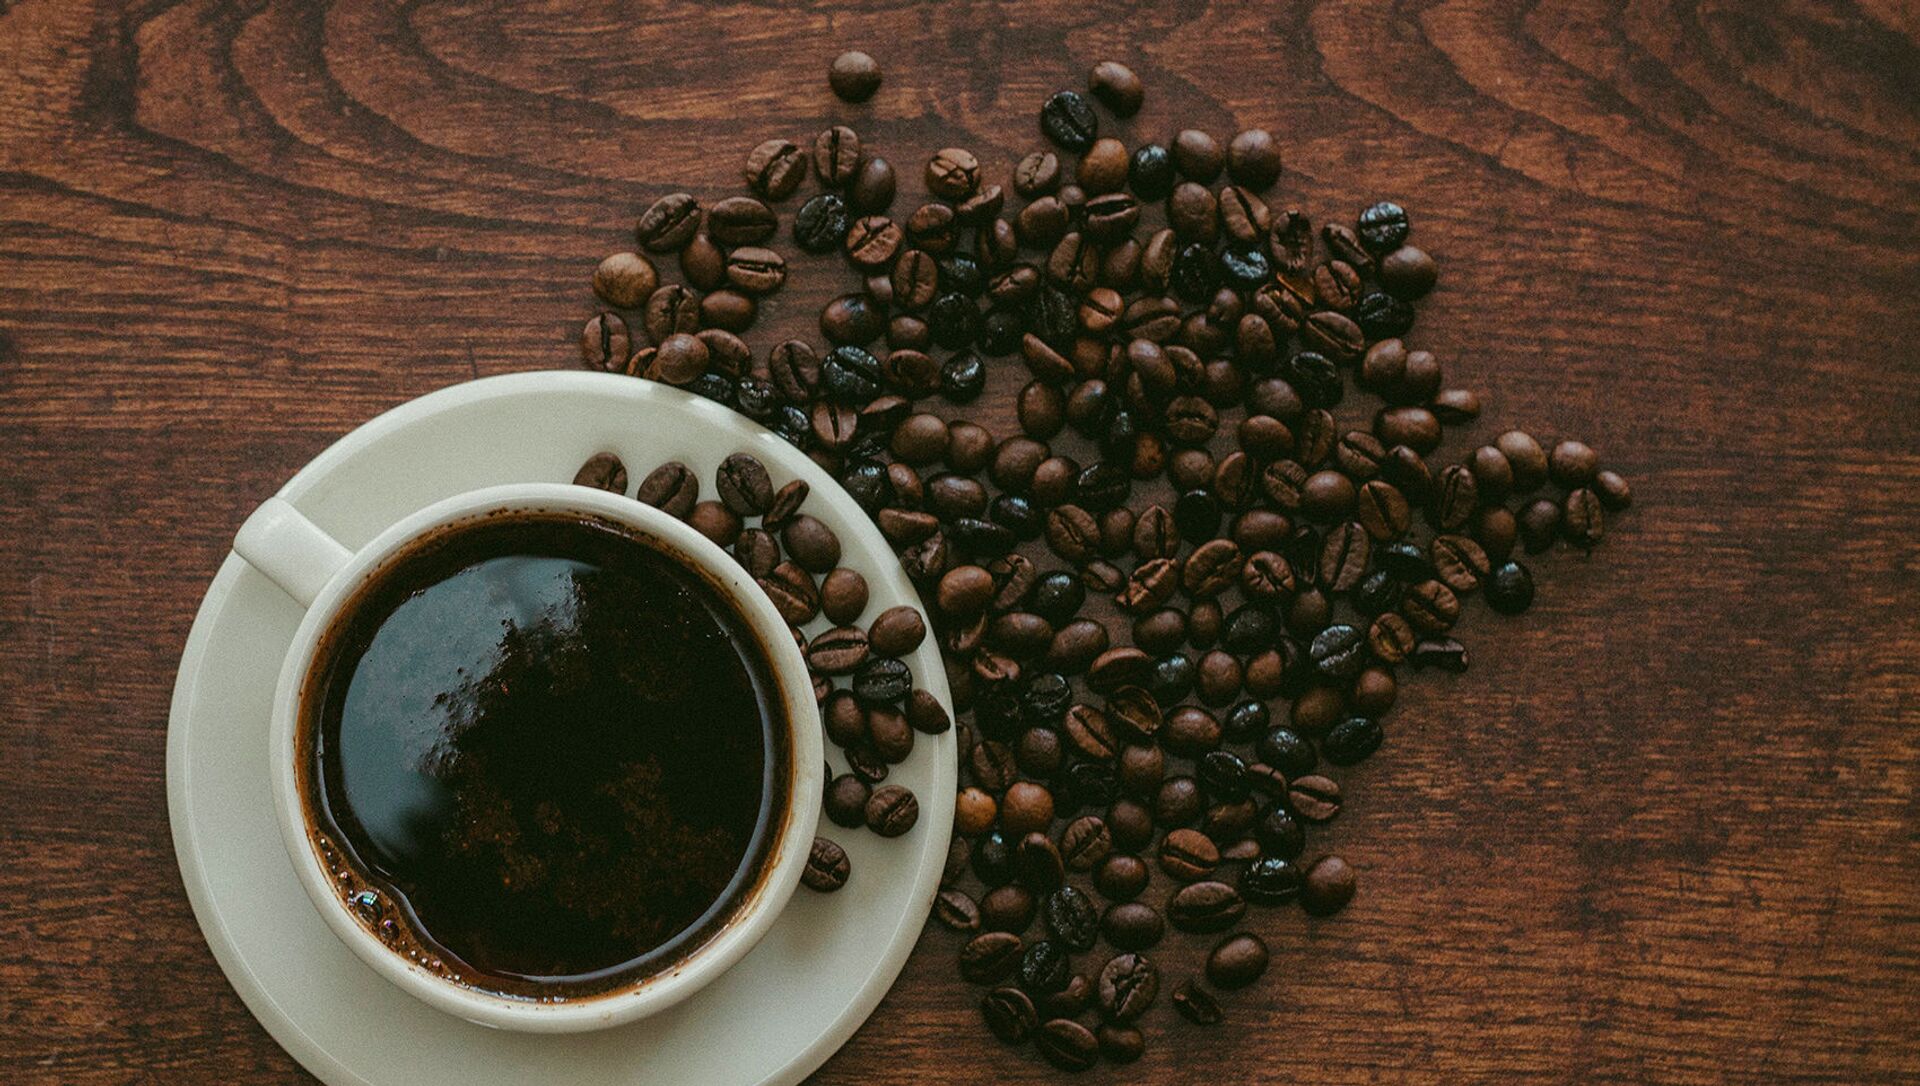 Սուրճն օգտակար է օրգանիզմի համար, քանի որ այս ըմպելիքի օգտագործումը նվազեցնում է լյարդի հիվանդության եւ մահվան վտանգը